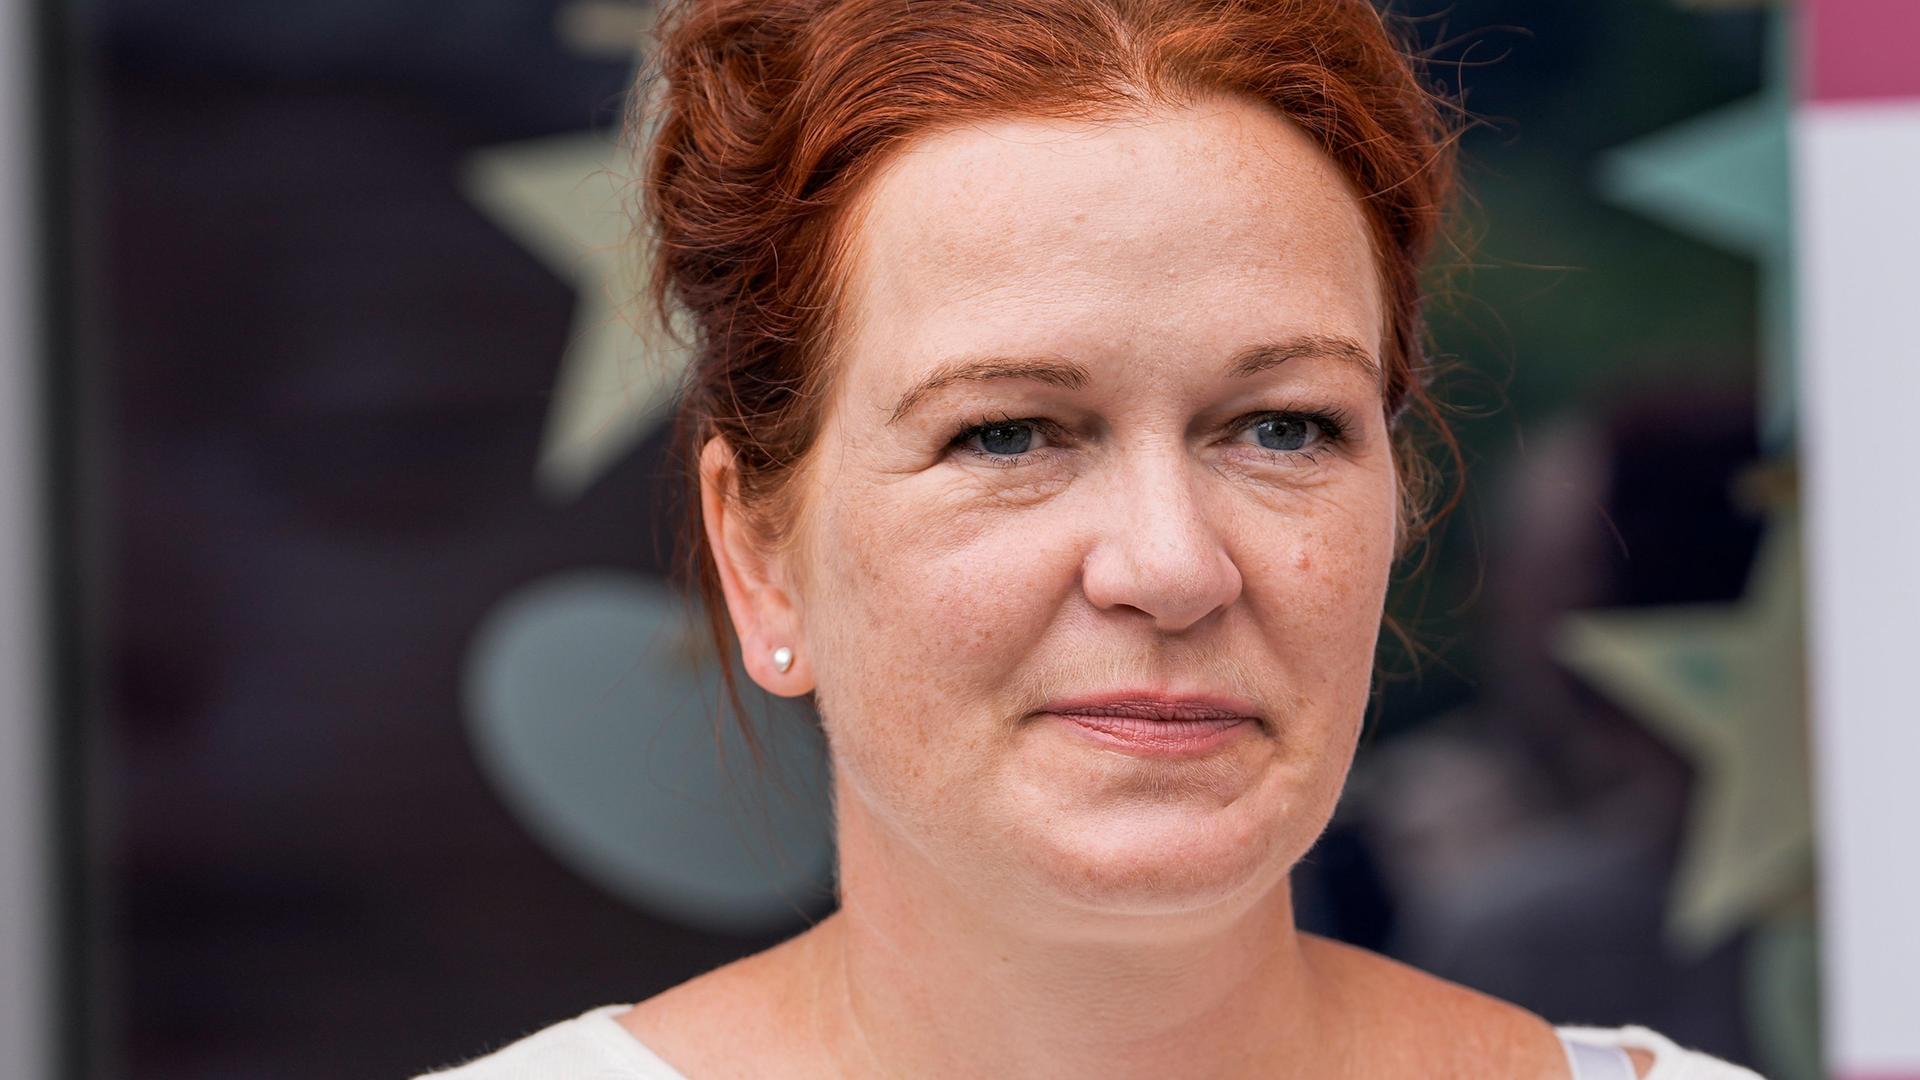 Die Bonner Oberbürgermeisterin Katja Dörner (Grüne)